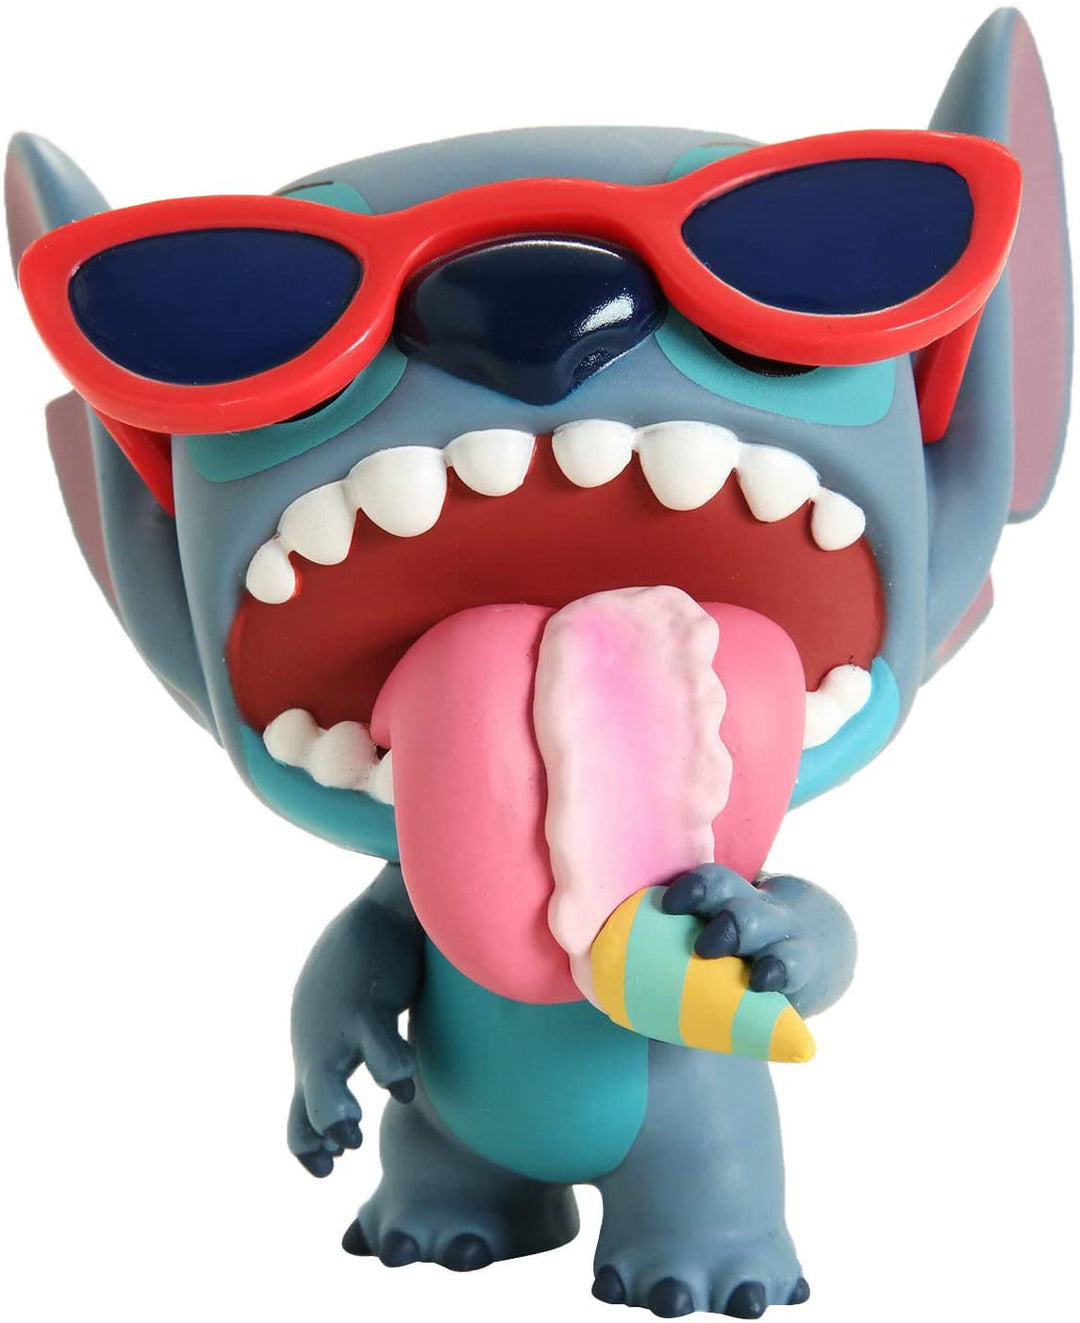 Disney Lilo &amp; Stitch Summer Stitch Exclusivo Funko 46089 Pop! Vinilo n. ° 636